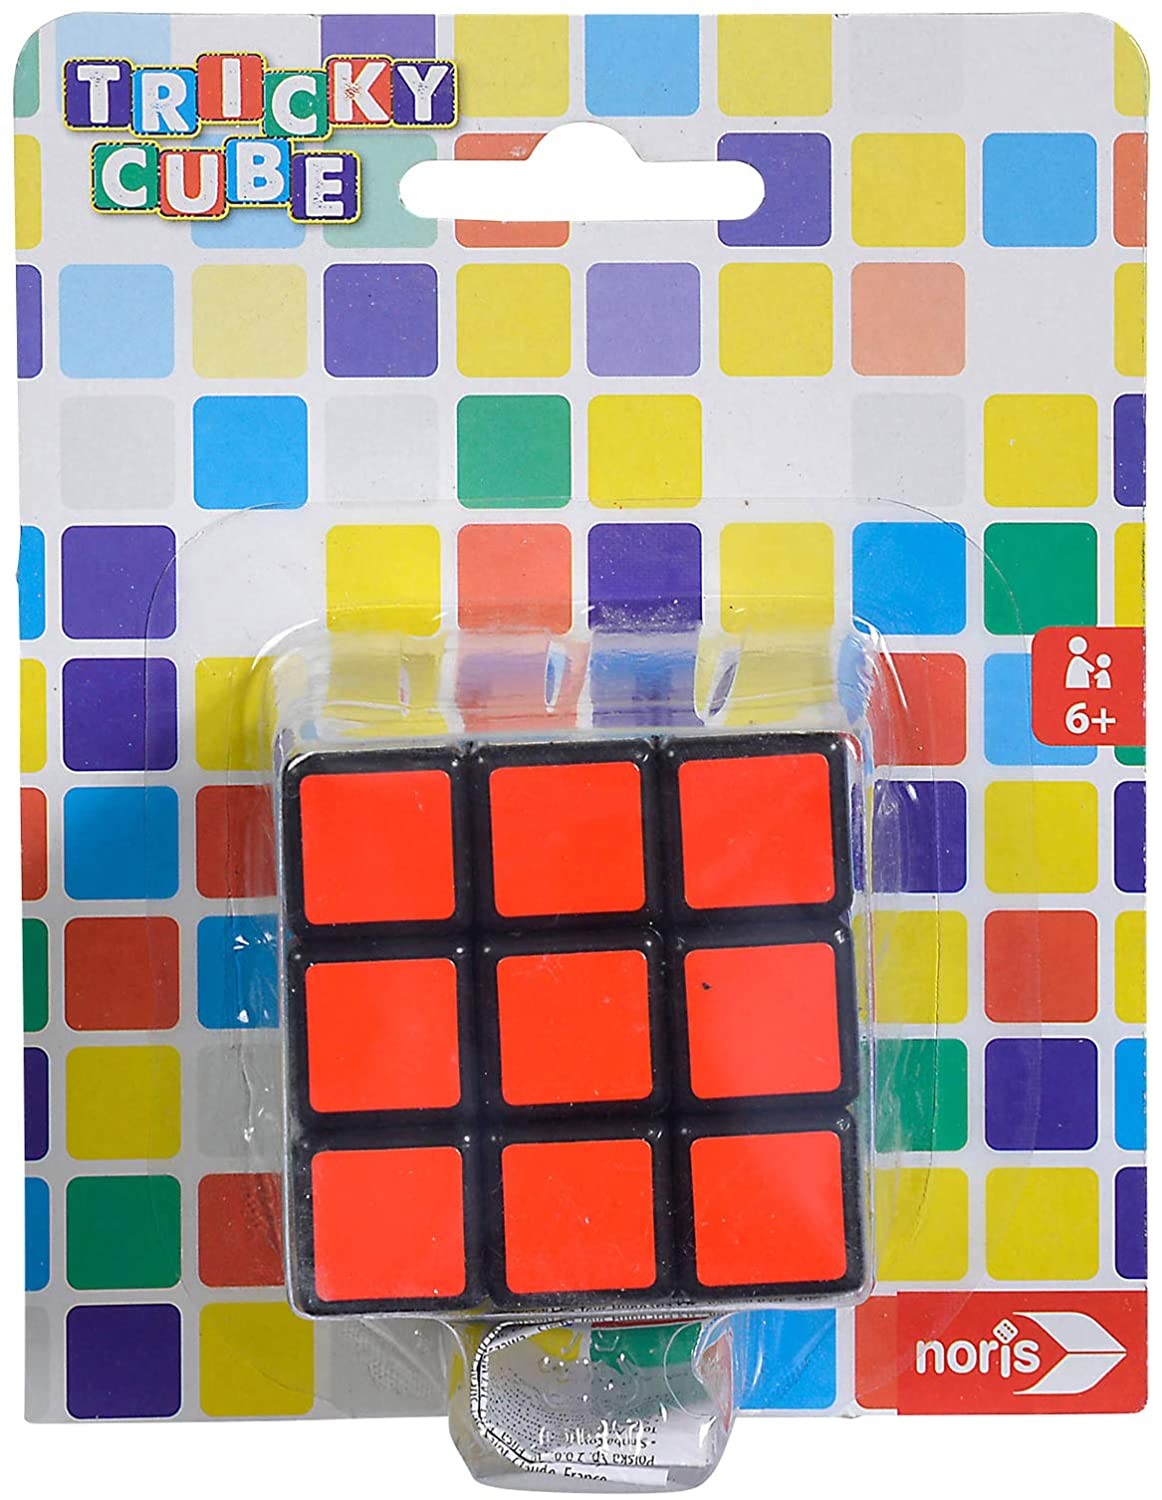 Noris 606134481 - Tricky Cube, Würfel, der Klassiker zur Förderung des Räumlichkeitsdenkens